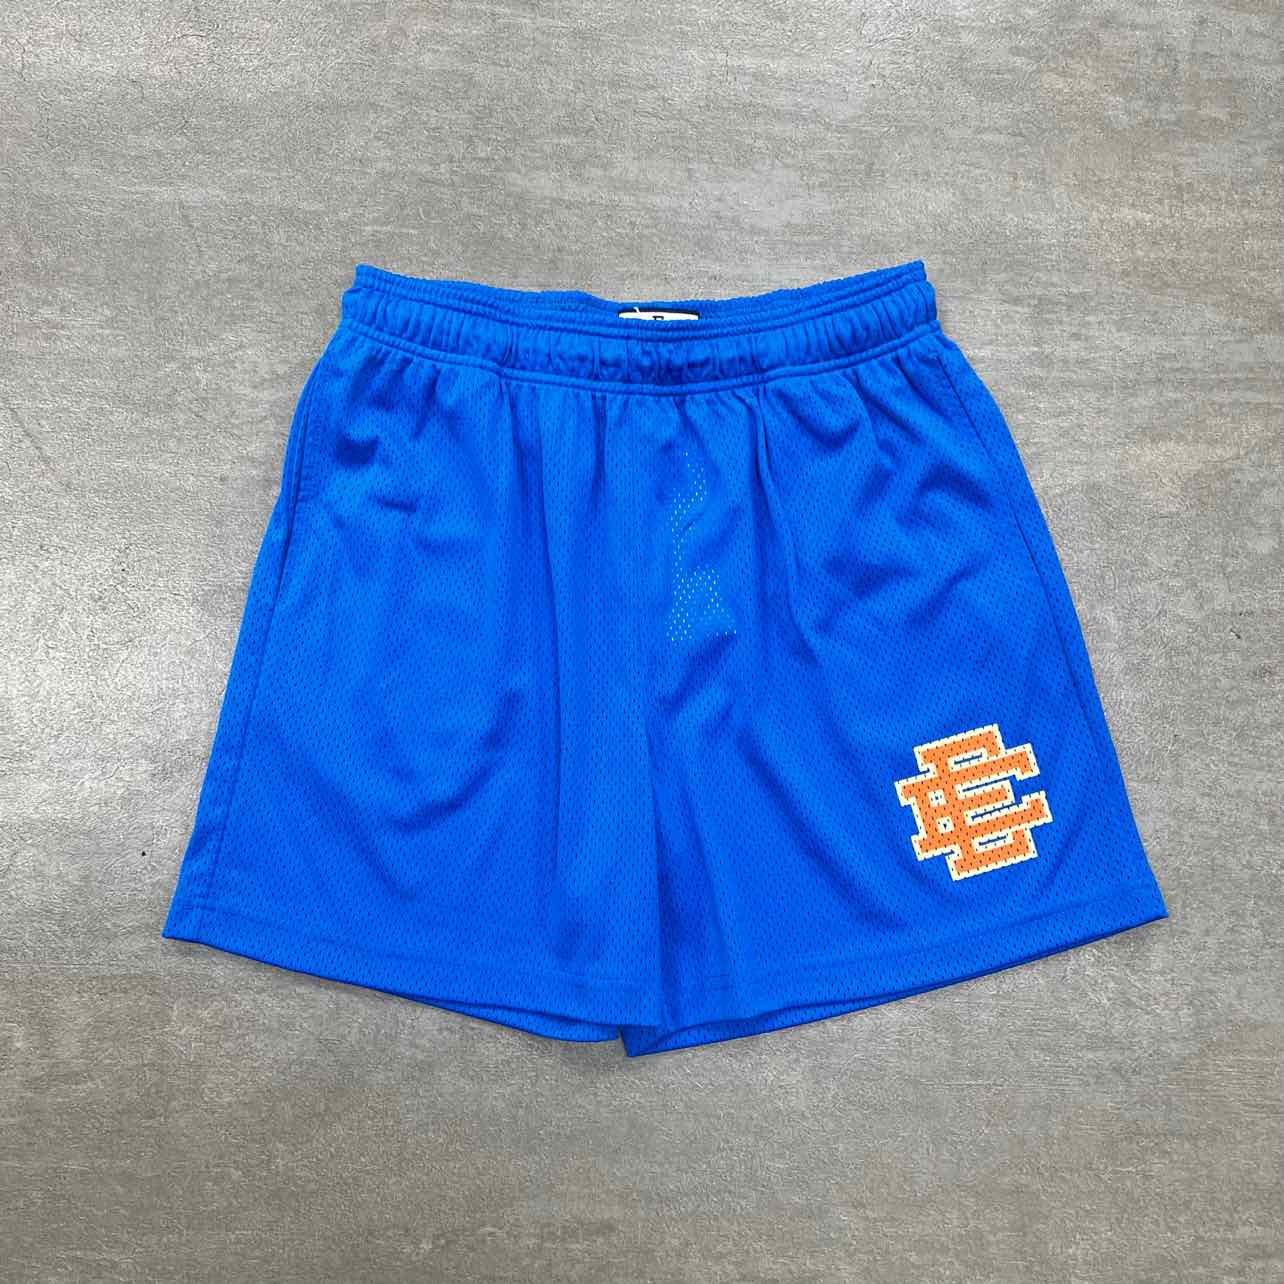 Eric Emanuel Mesh Shorts &quot;BLUE&quot; Orange New Size L